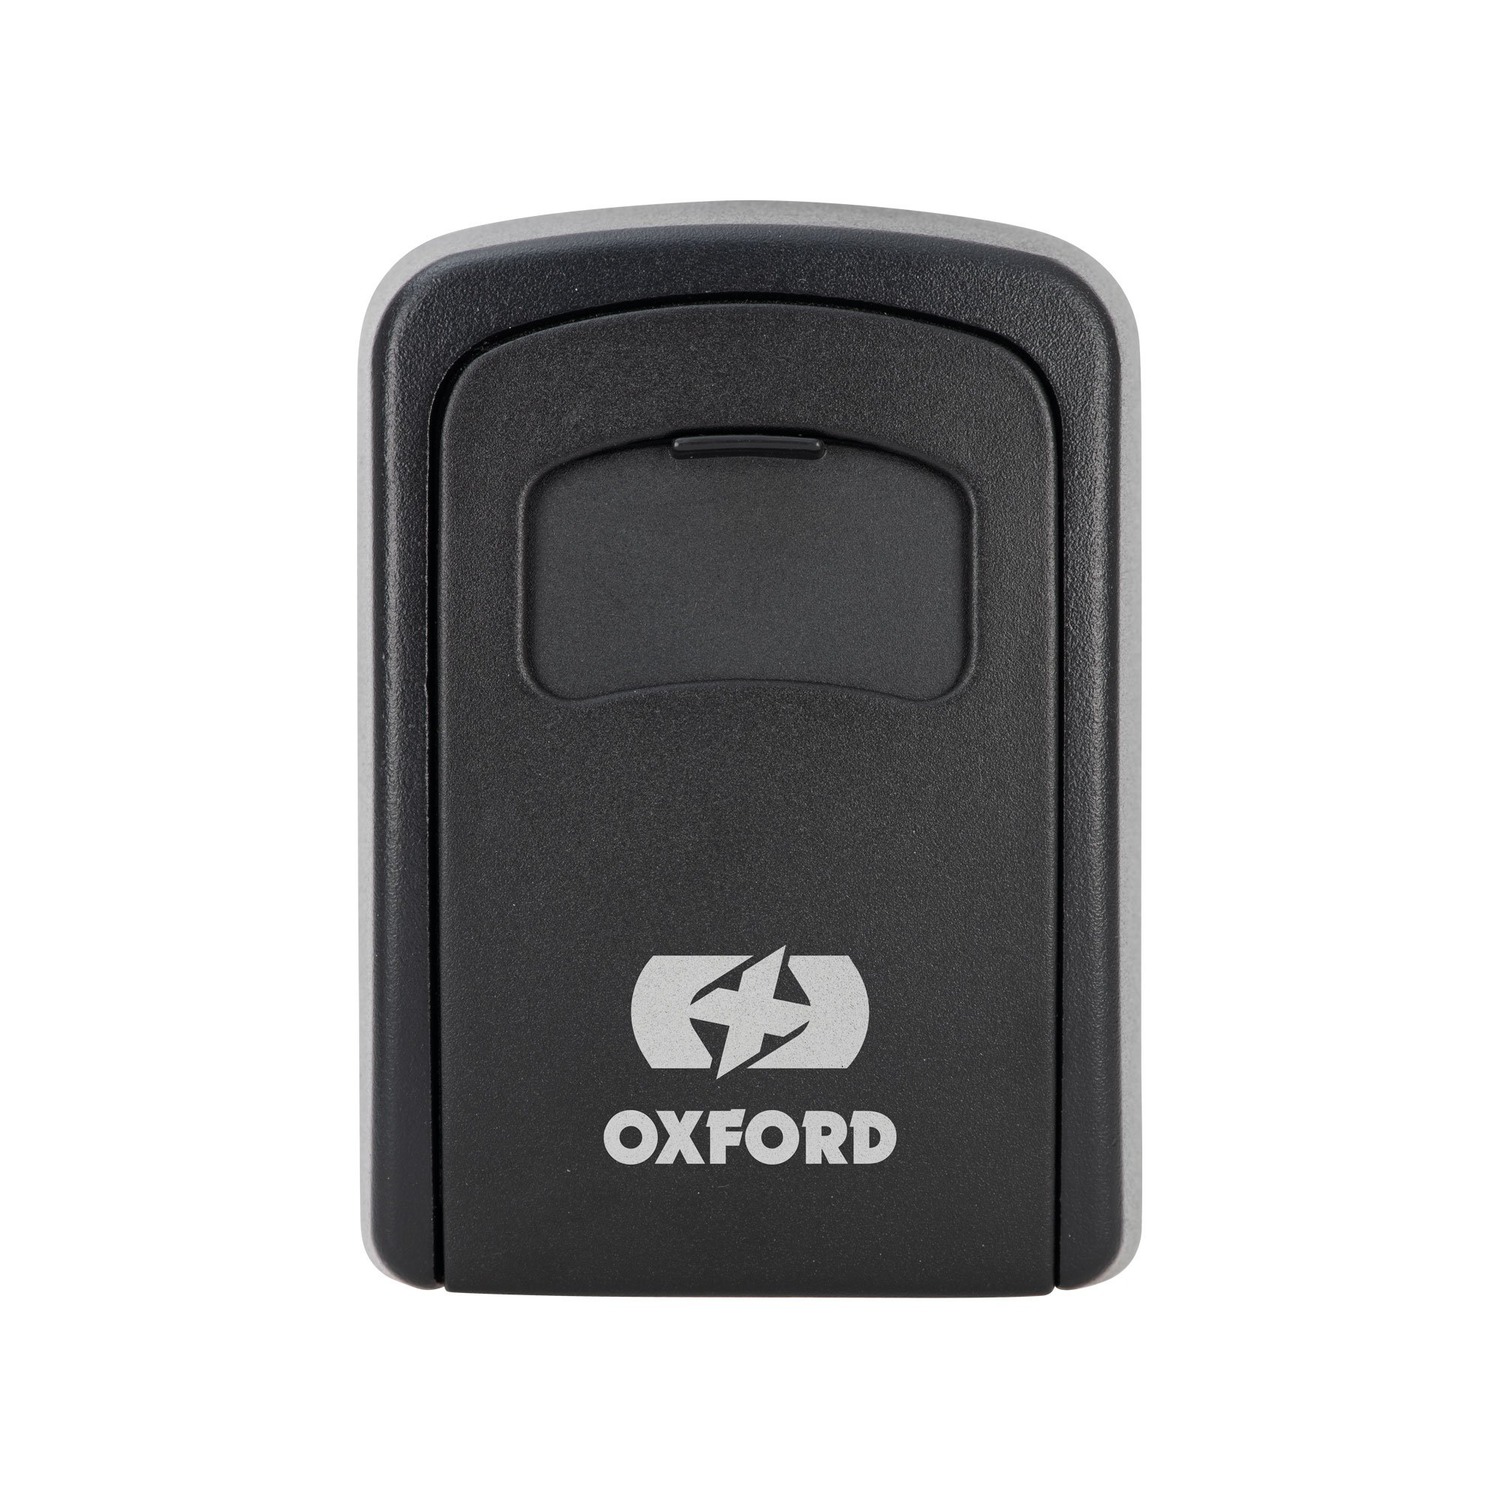 Obrázek produktu schránka na klíče s číselníkem KEY SAFE, OXFORD LK103